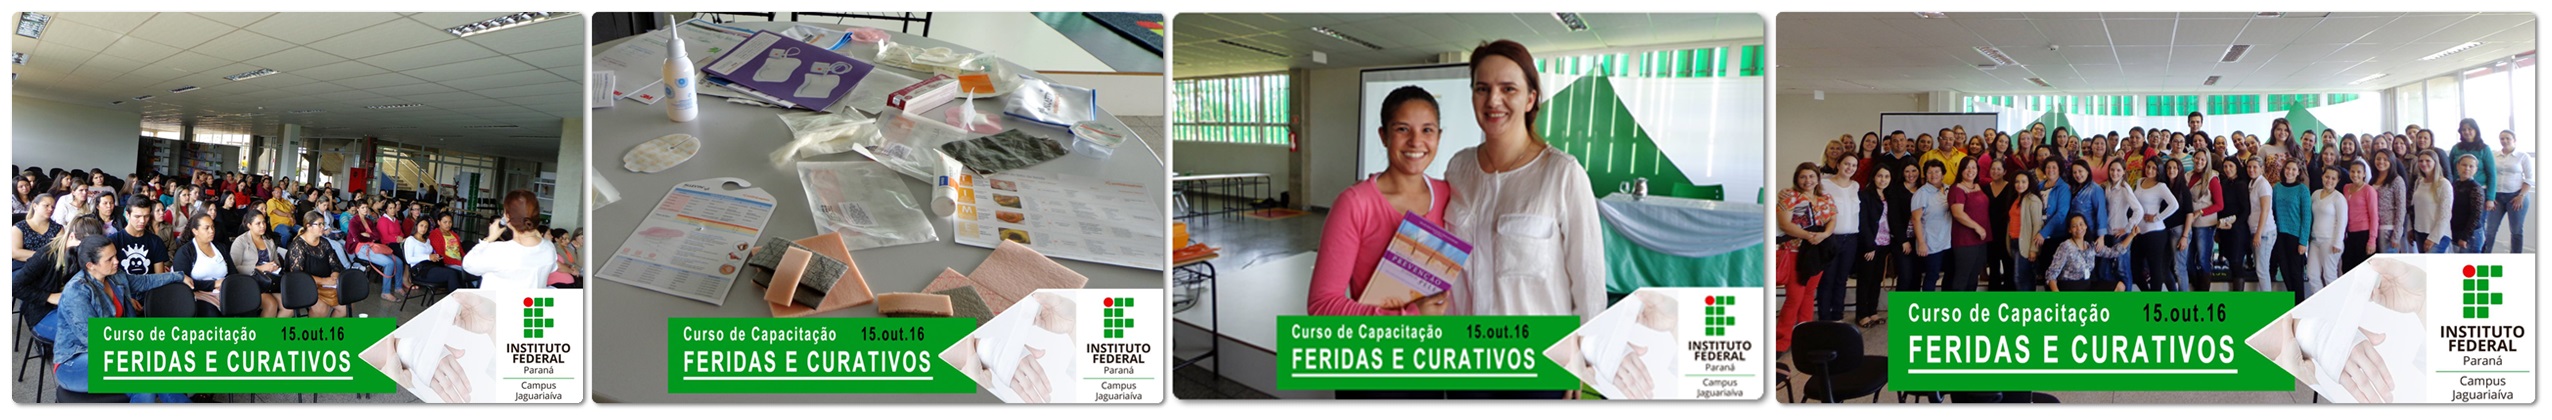 Curso de capacitação em Feridas e Curativos é realizado no Campus Jaguariaíva